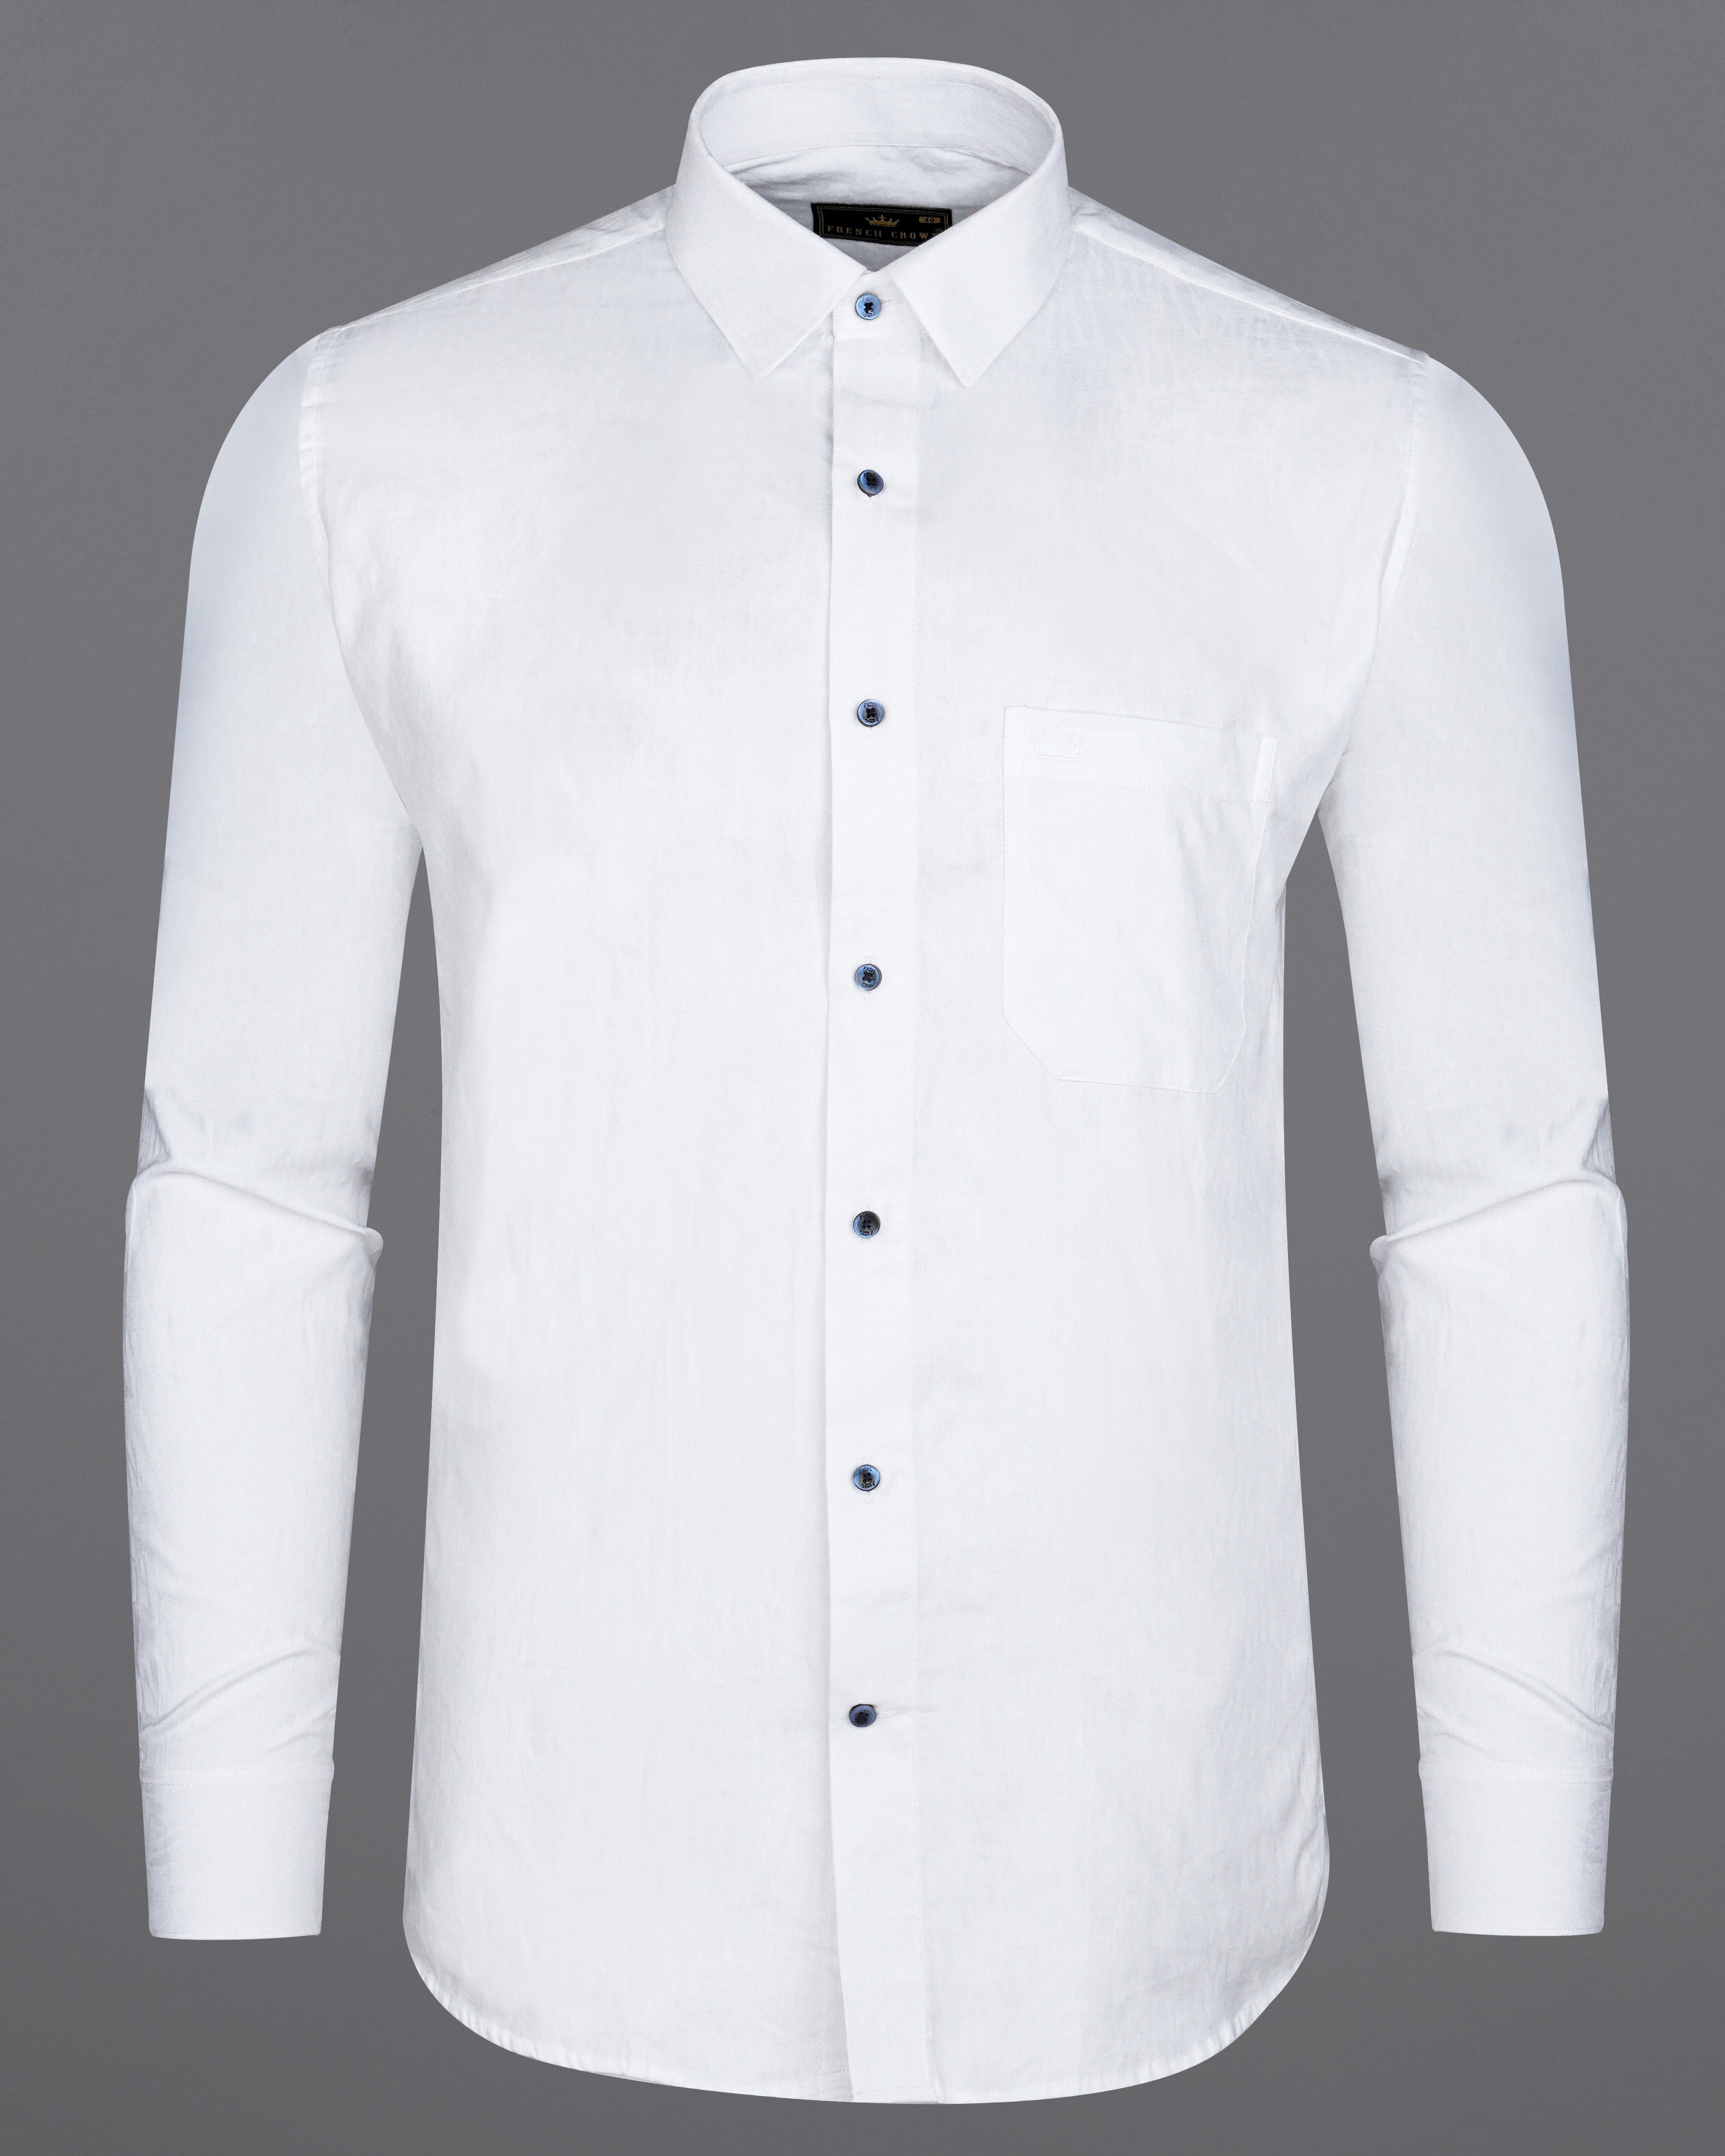 Bright White Jacquard Textured Premium Giza Cotton Shirt